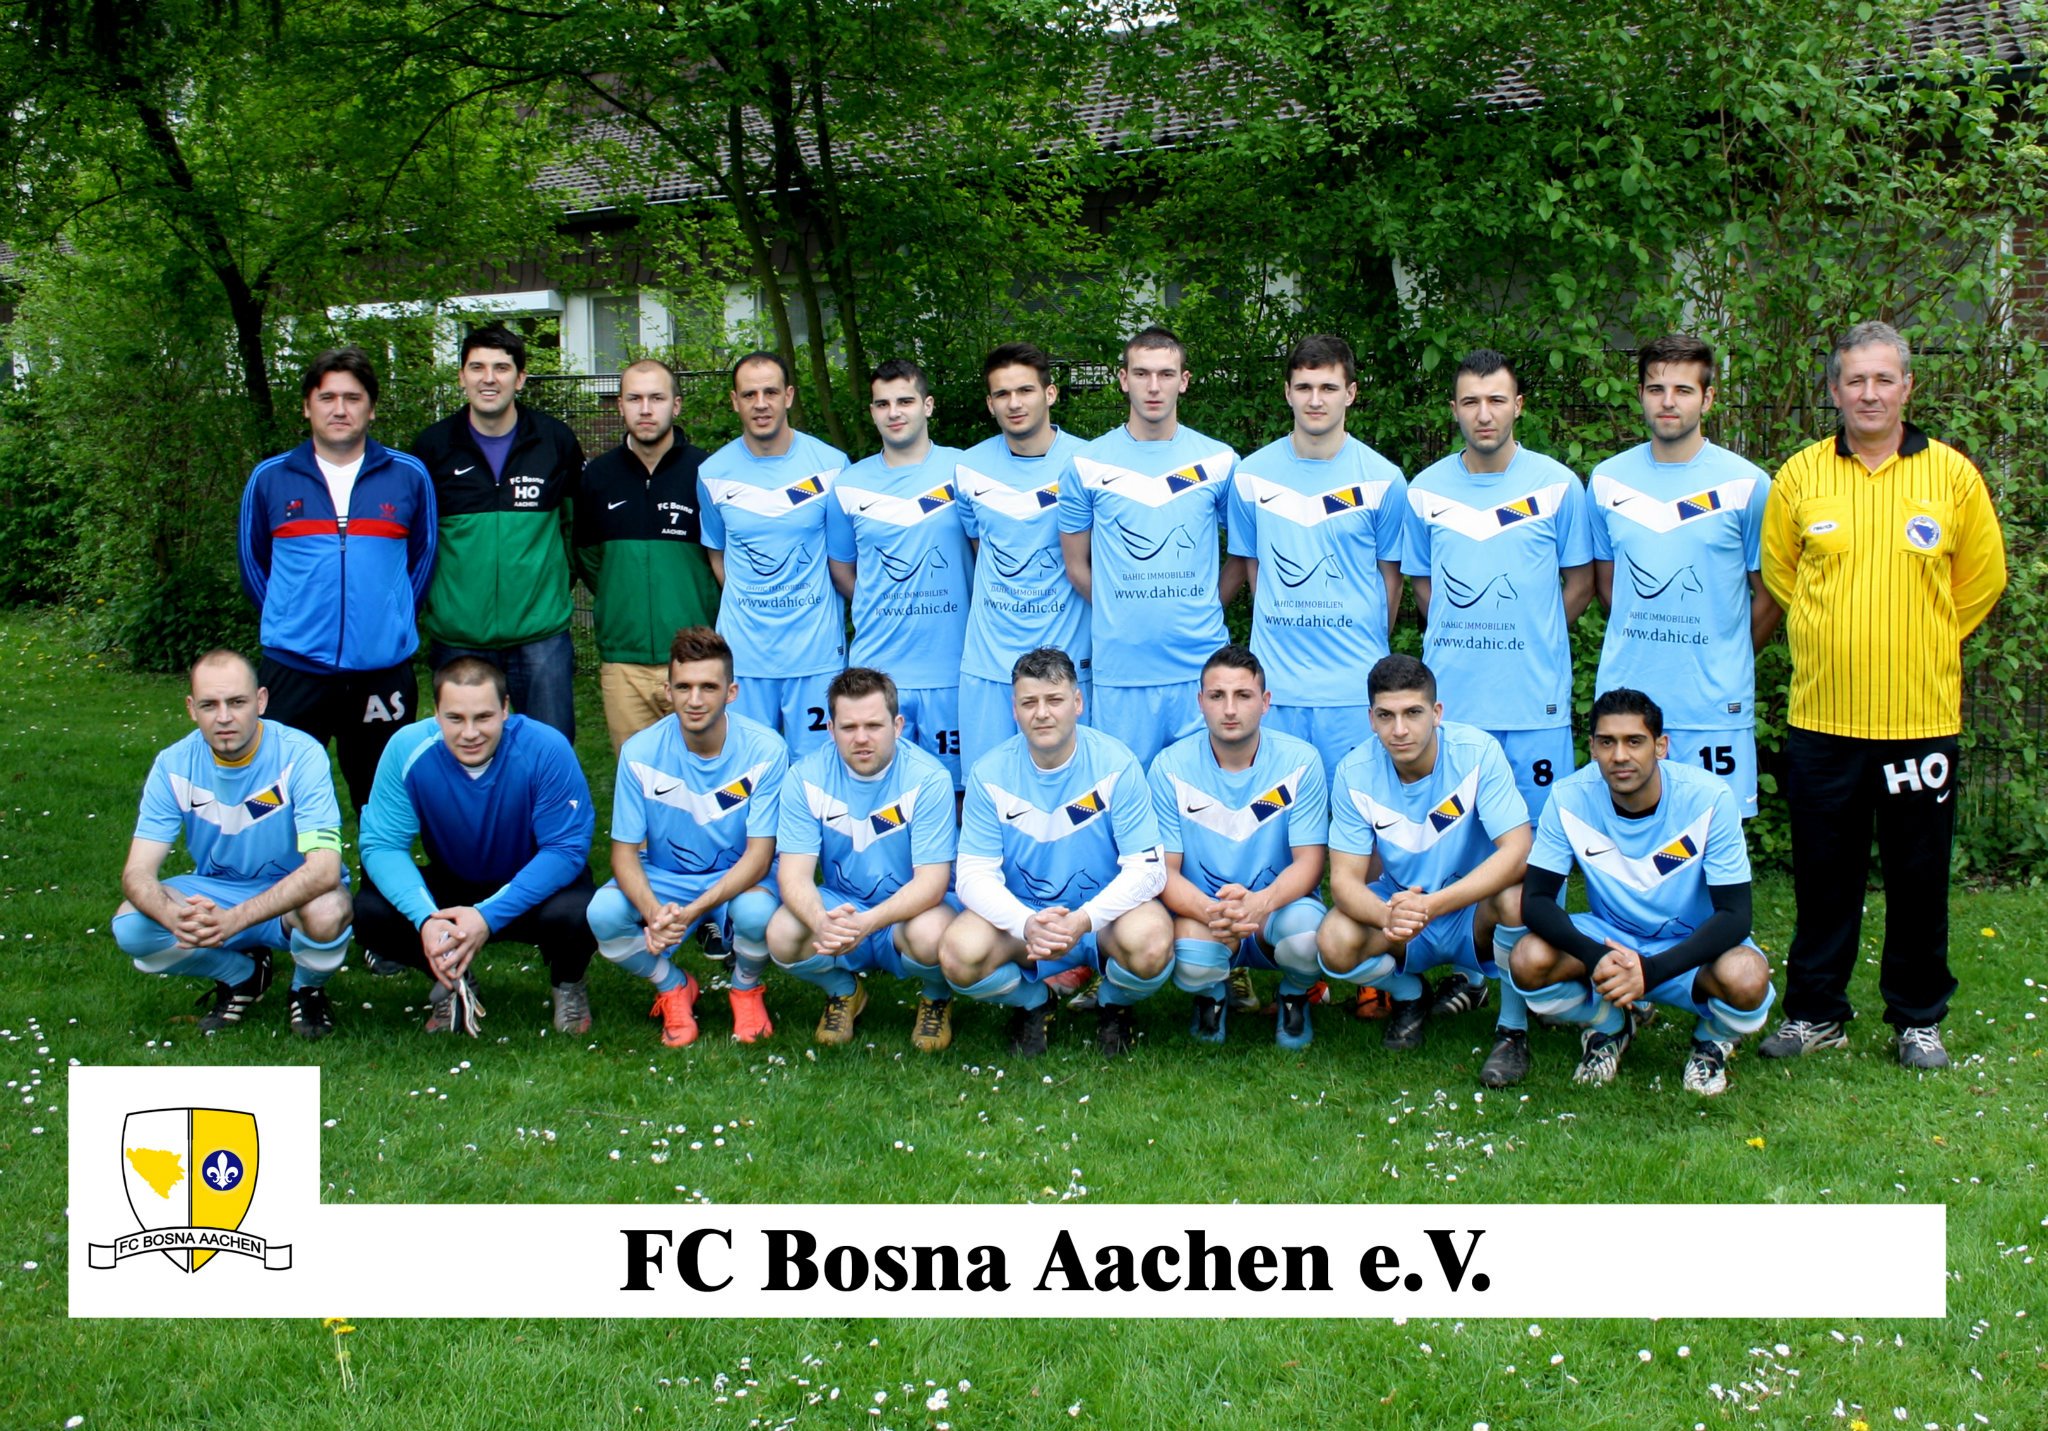 Mannschaftsfoto/Teamfoto von Bosna Aachen